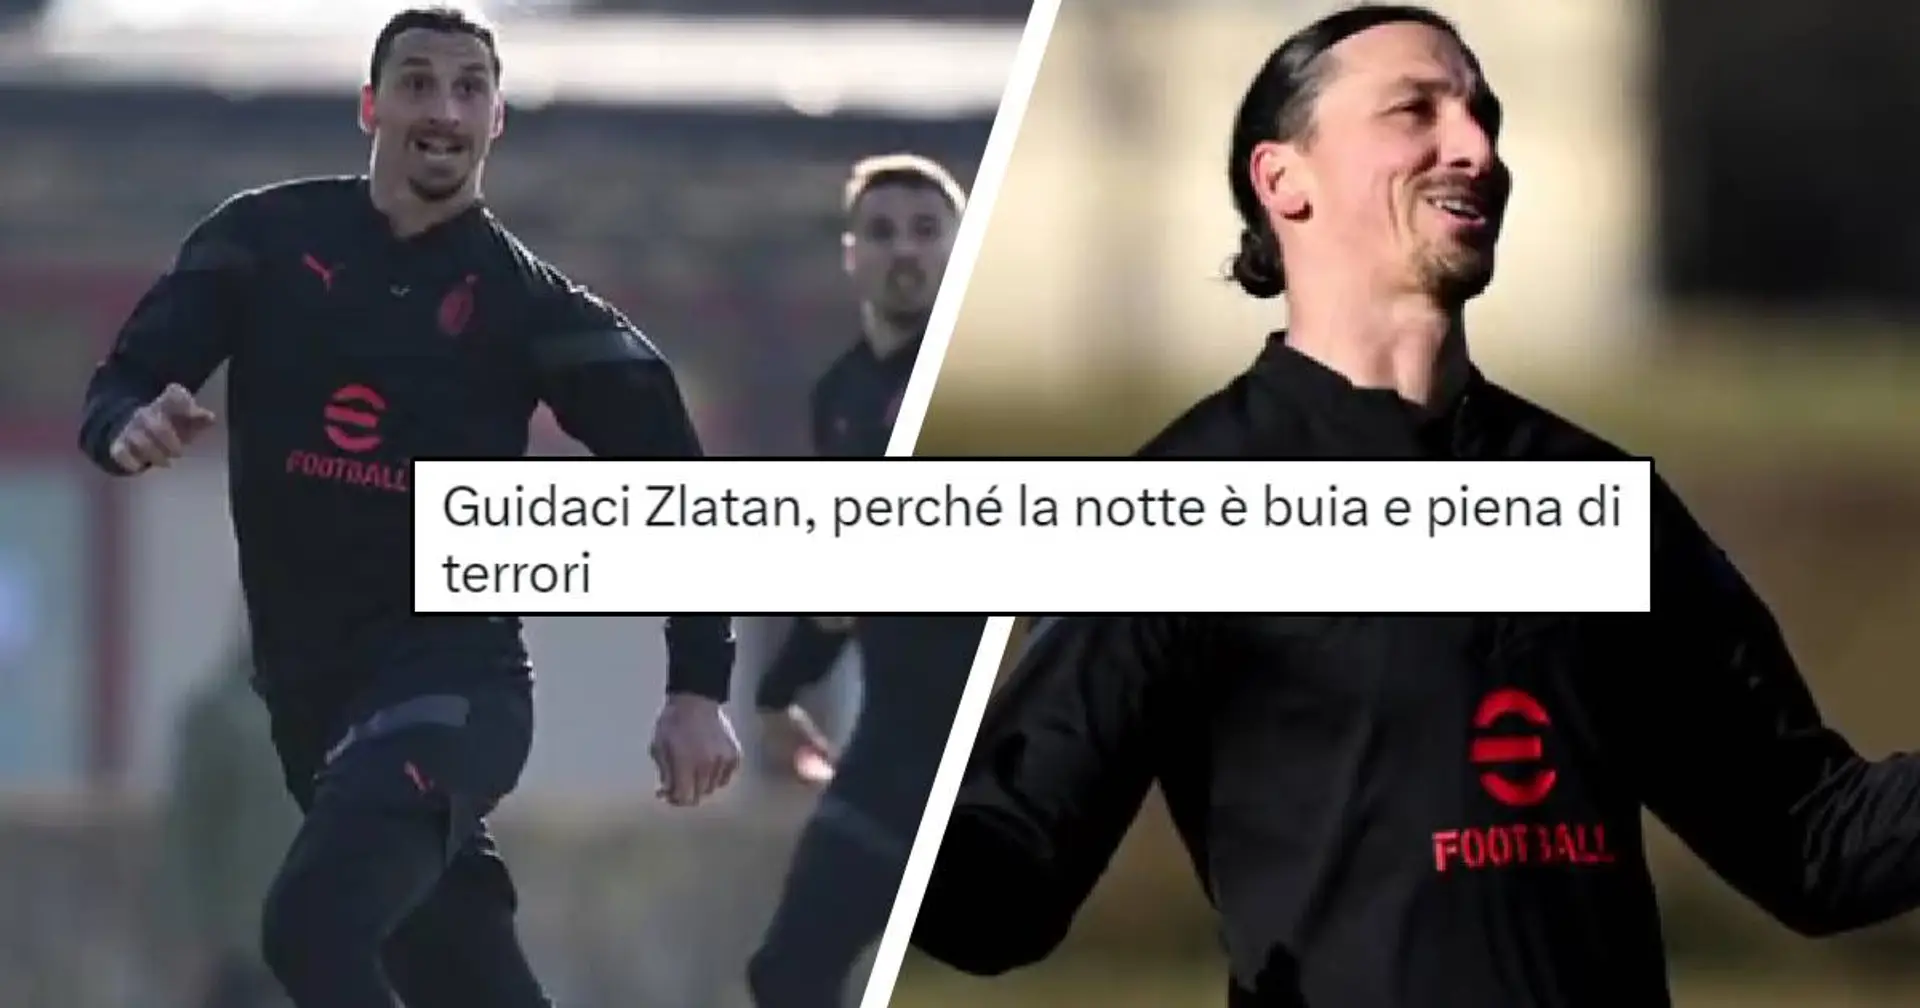 Il ritorno di Ibrahimovic scatena i tifosi del Milan: "Guidaci Zlatan, perché la notte è buia e piena di terrori"